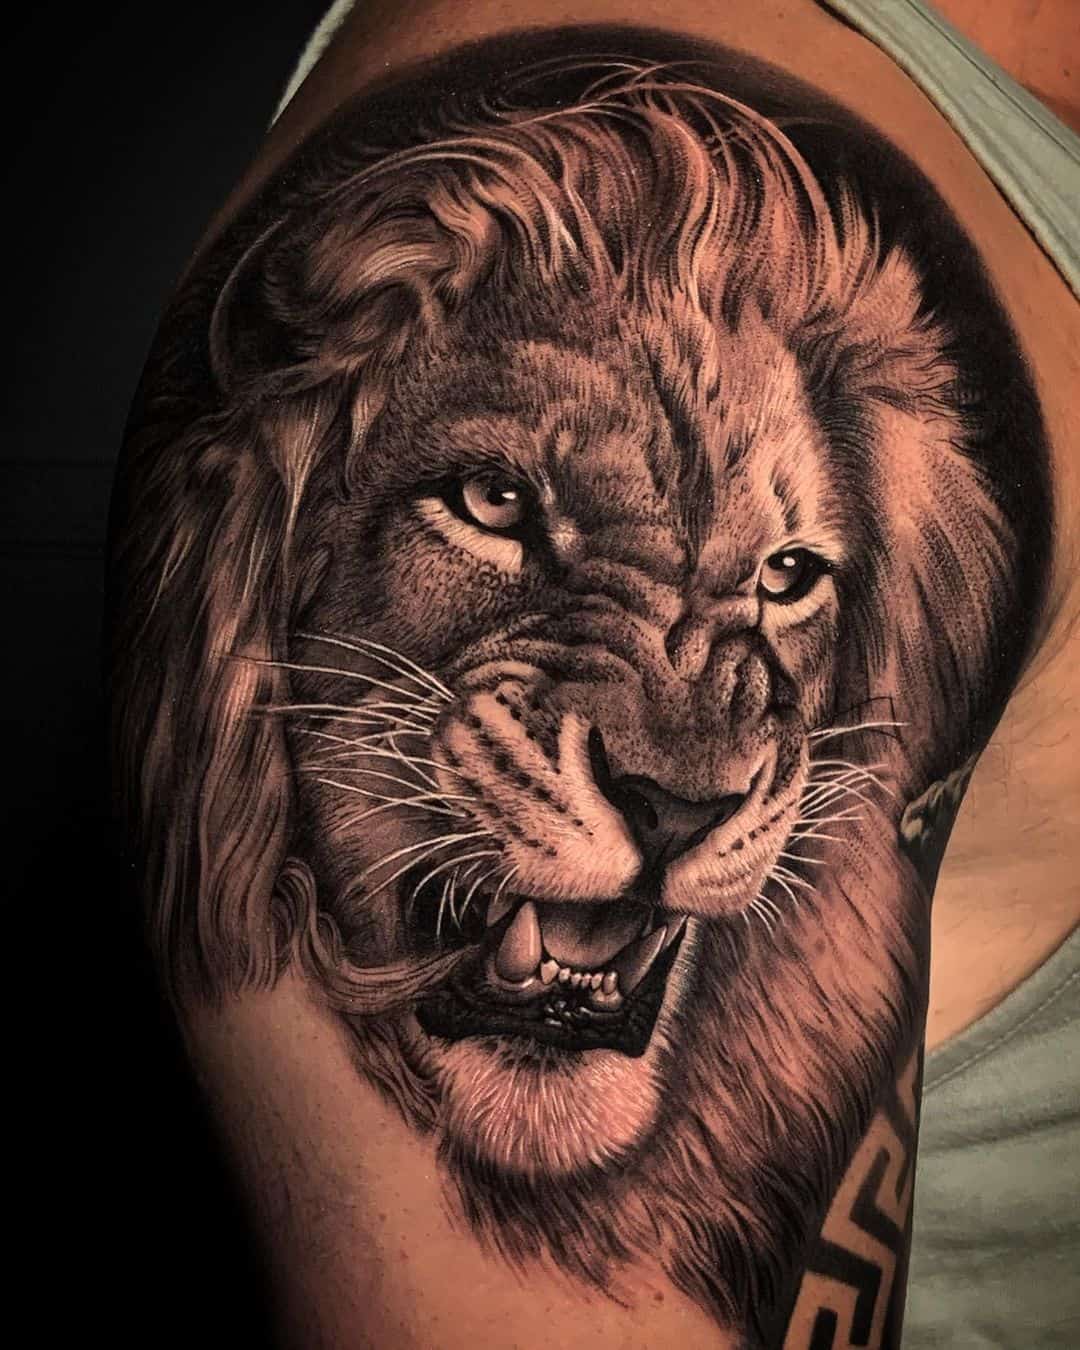 Roaring Lion Tattoo, Best Tattoo Artist in India - Manjeet Tattooz